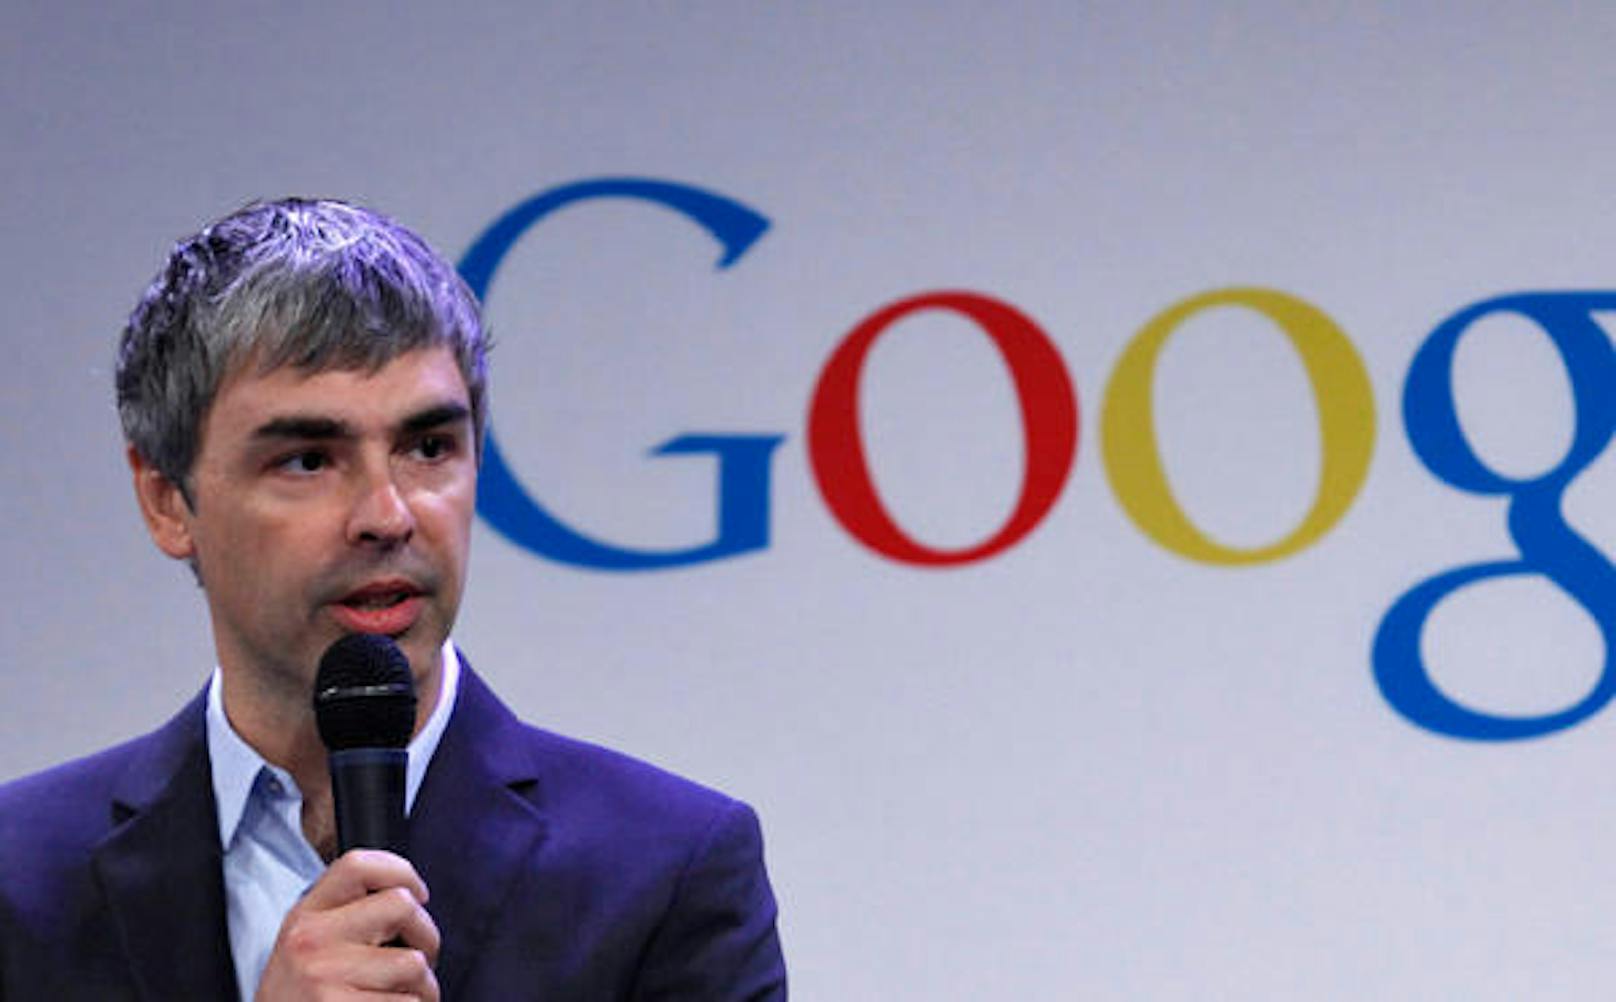 <strong></strong>Der frühere Alphabet-CEO und Google-Gründer&nbsp;<strong>Larry Page</strong>&nbsp;ist rund 111 Milliarden Dollar schwer, im Vergleich zum Vorjahr eine Steigerung von 19,5 Milliarden Dollar.